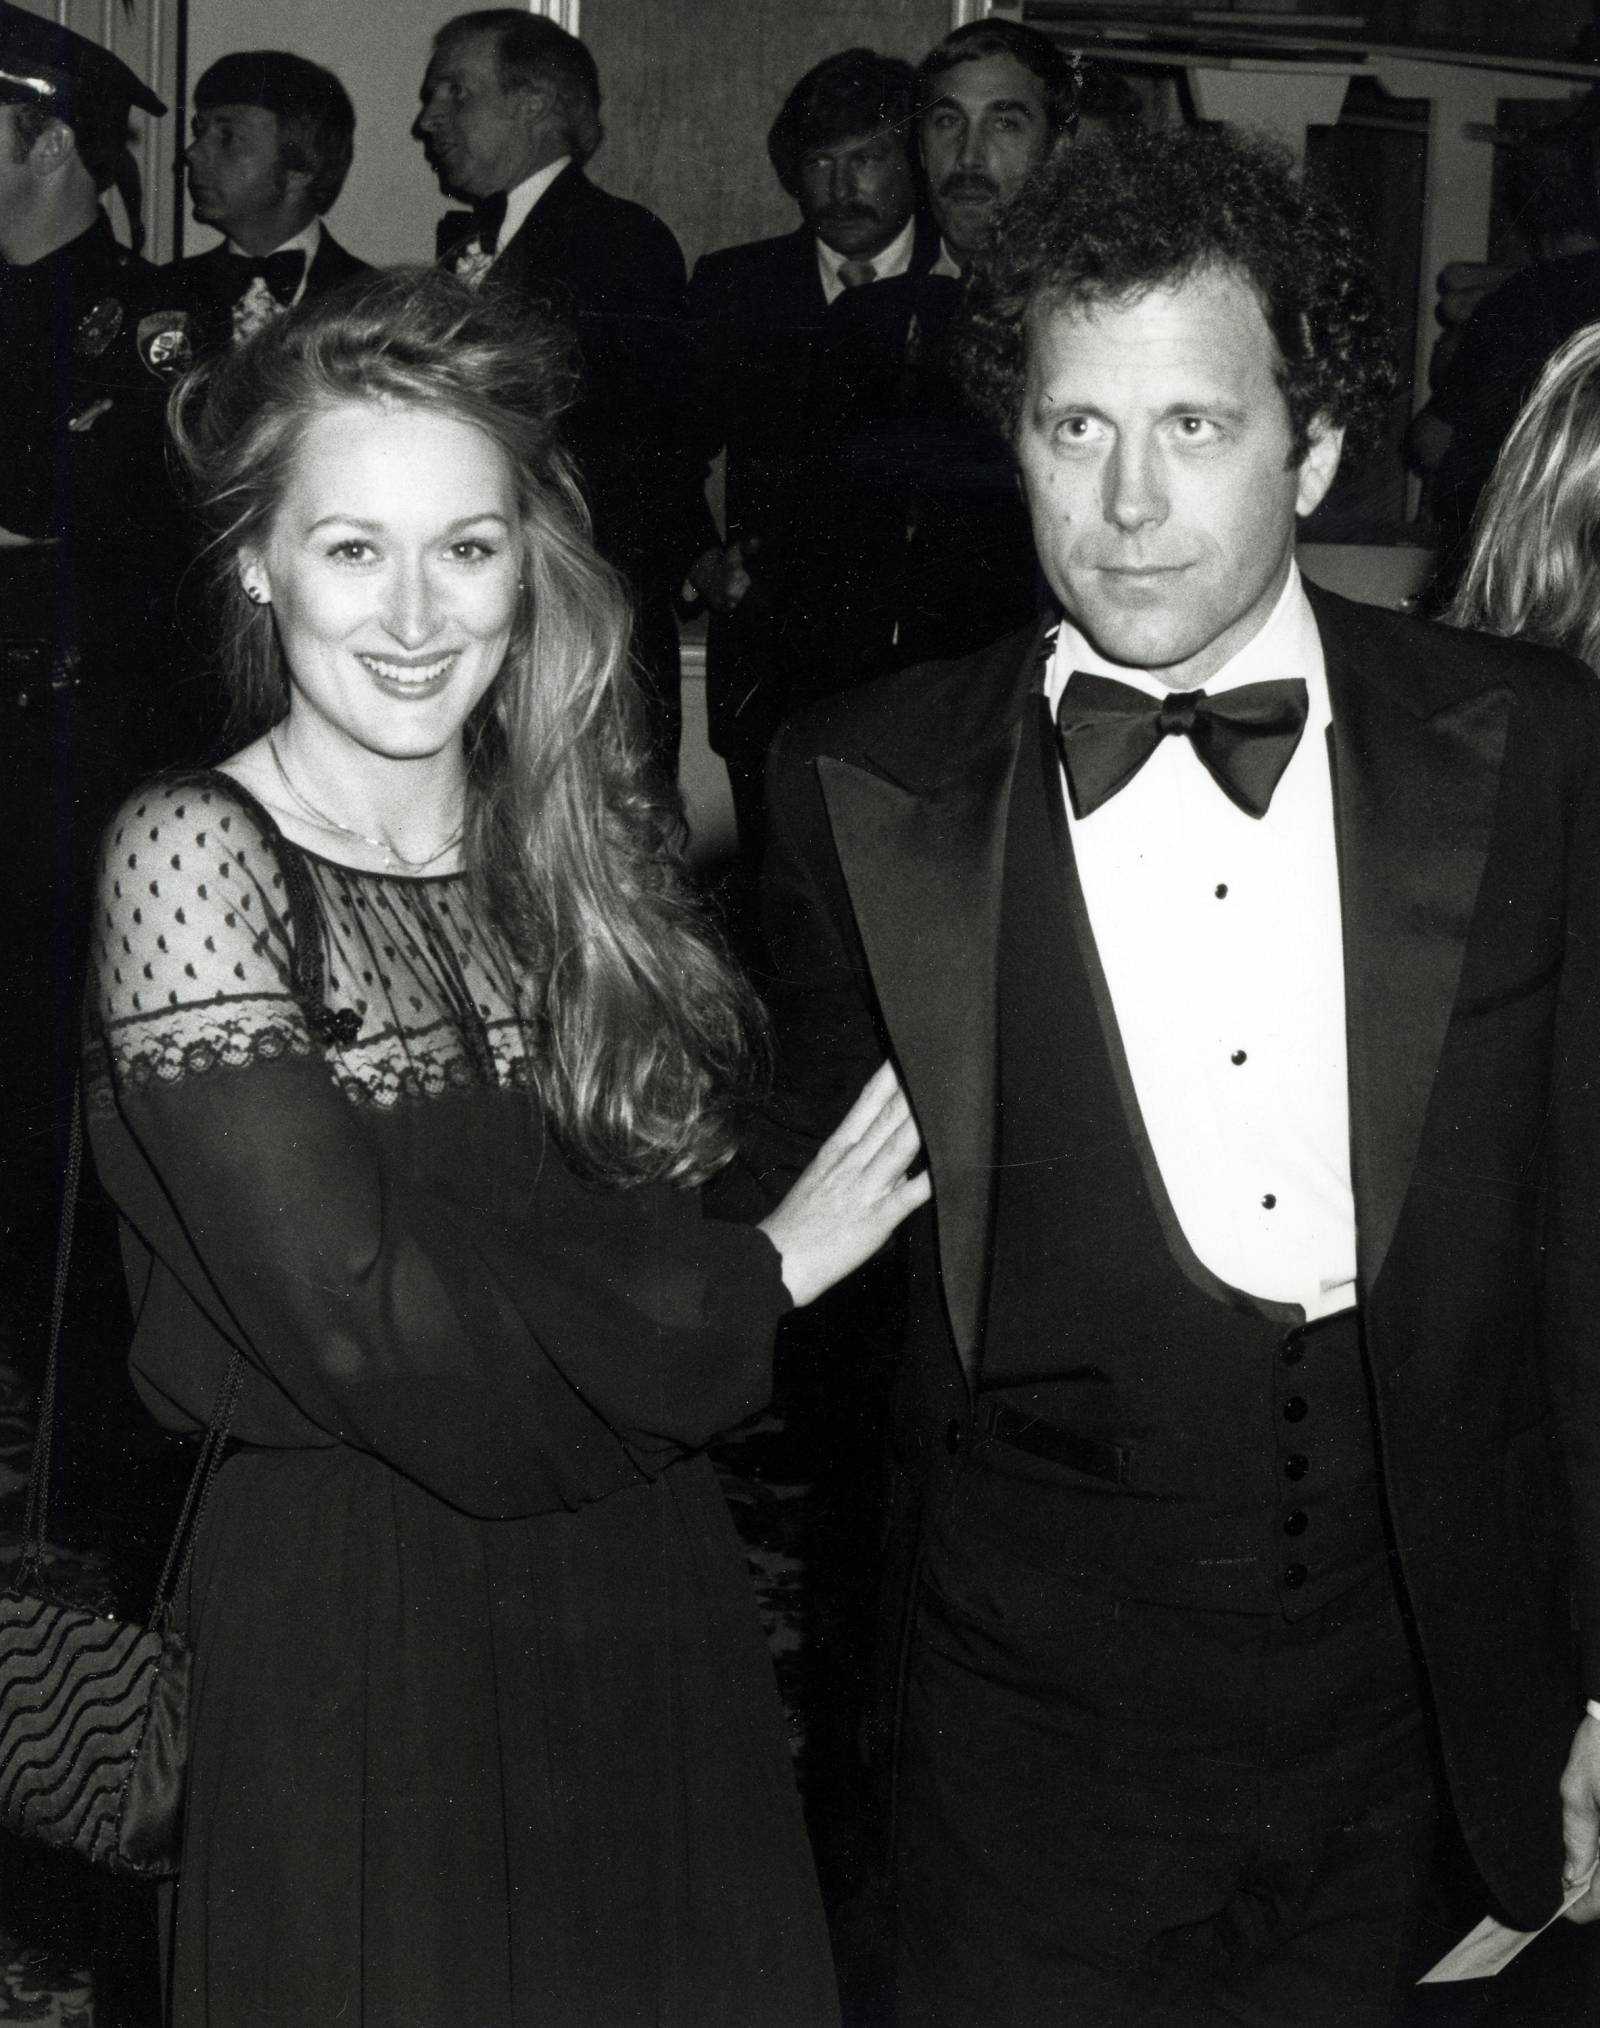 Debiut jako małżeństwo na czerwonym dywanie - Oscary 1979 (Fot. Ron Galella, Getty Images)